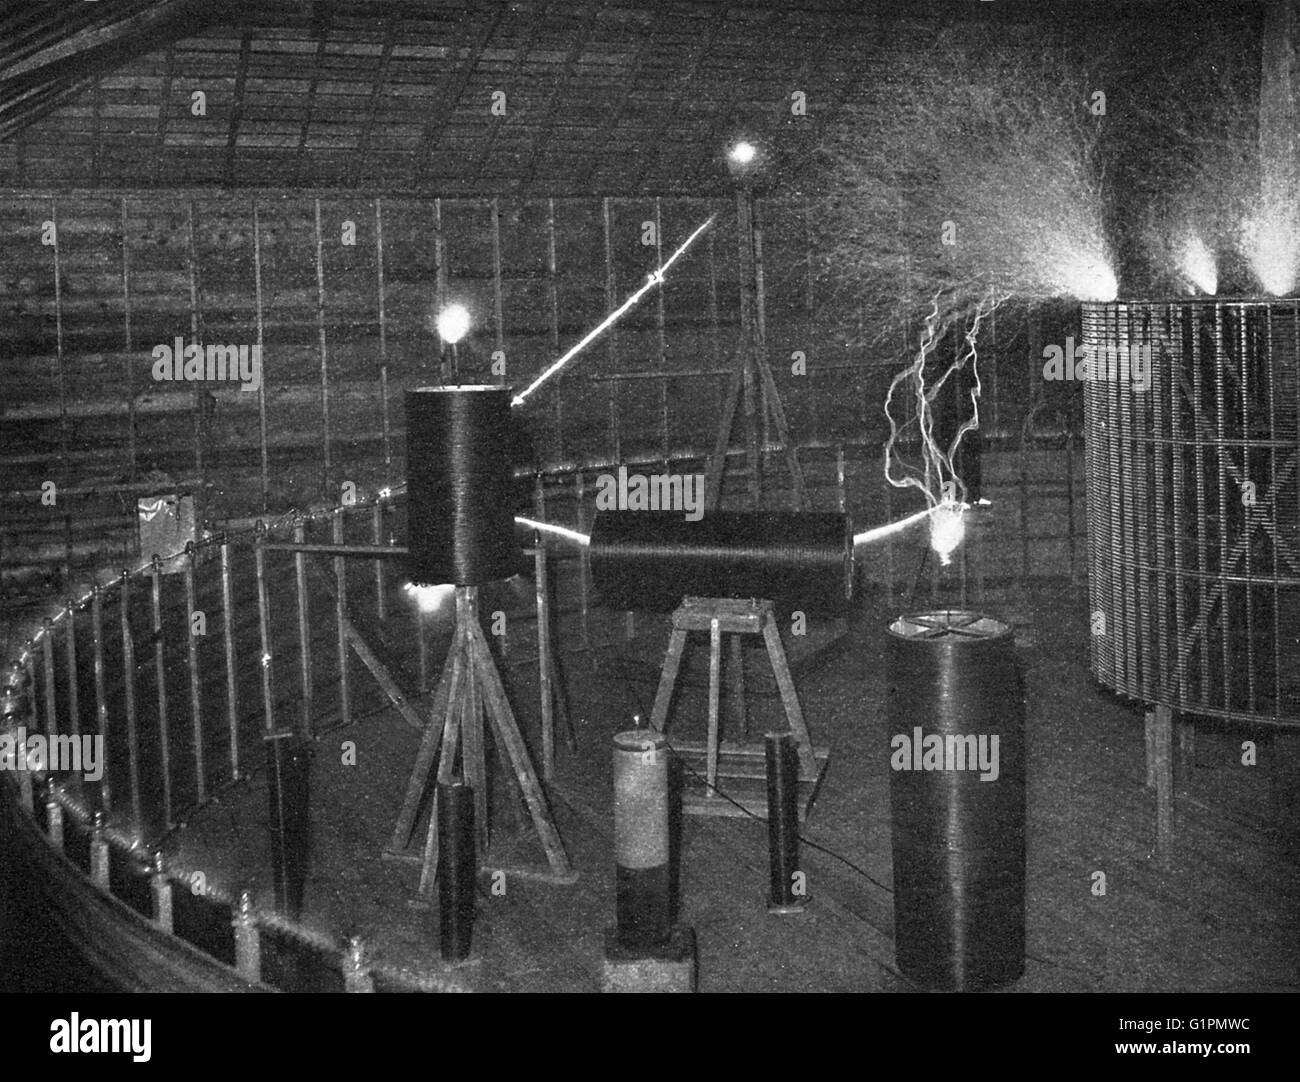 TESLA a laboratorio, c1900. Bobine di rispondere alle oscillazioni elettriche durante una dimostrazione in Nikola Tesla a laboratorio in Colorado Springs, Colorado. Fotografia di Dickenson V. vicolo, c1900. Foto Stock